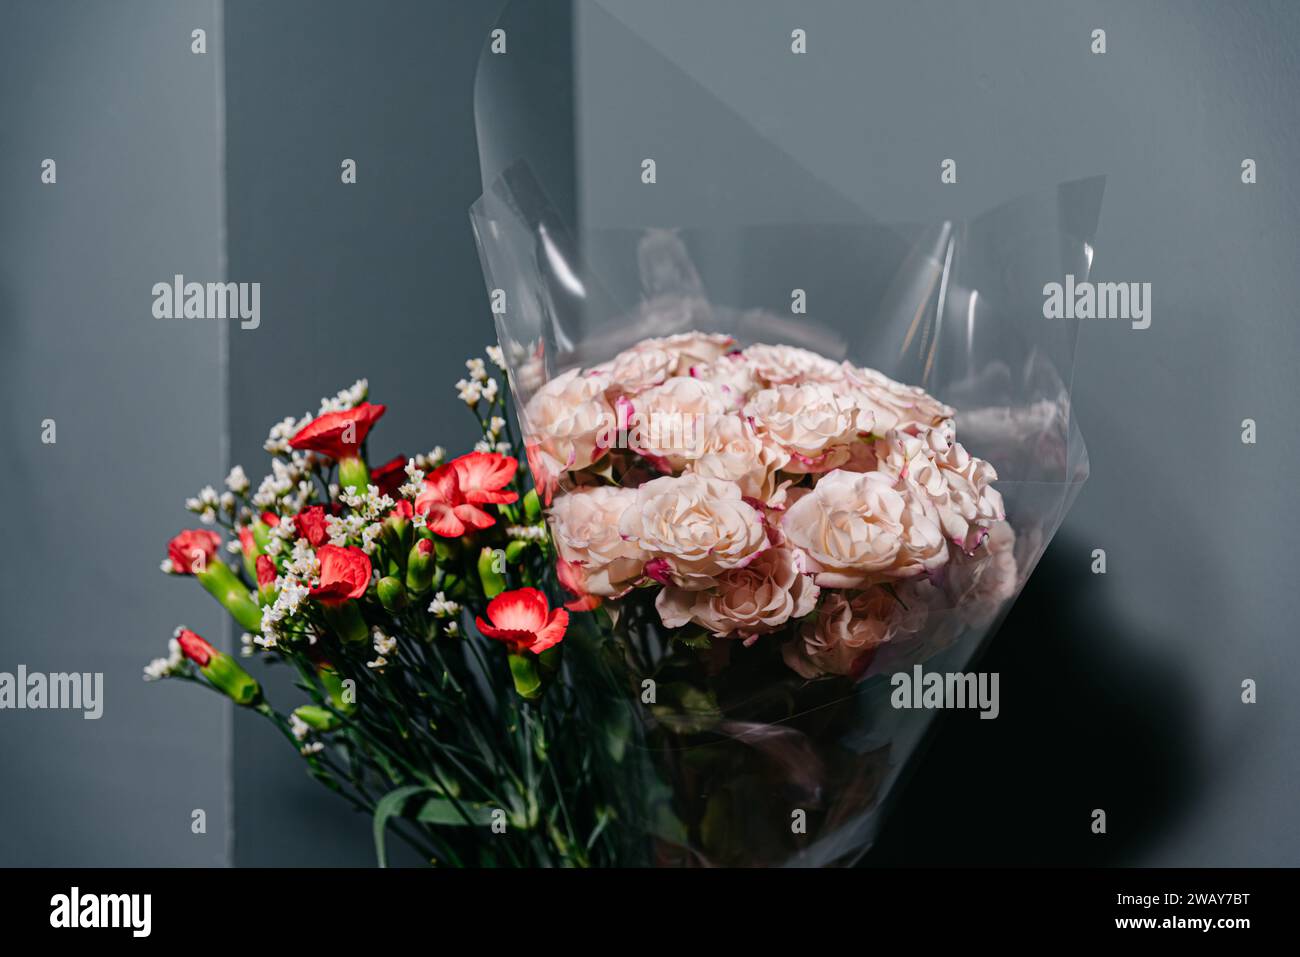 Roses roses délicates et œillets rouges vibrants enveloppés dans un film transparent, projetant une ombre douce sur un fond gris. Banque D'Images